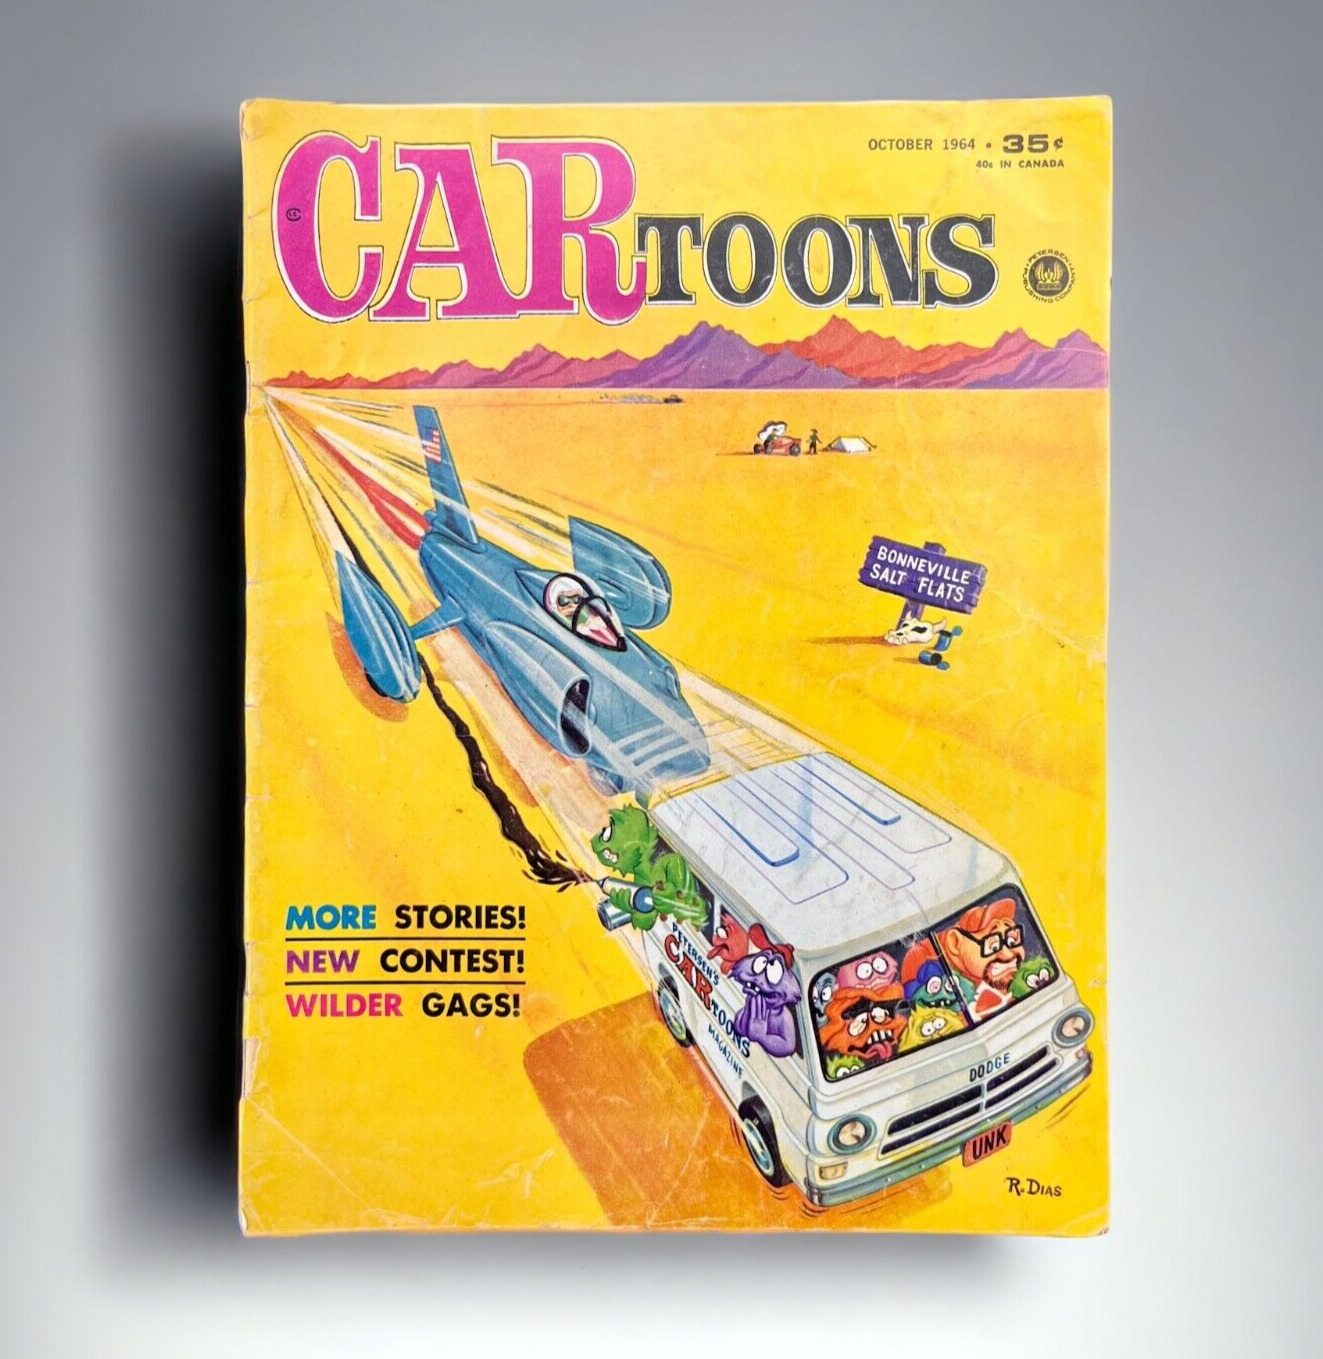 CARtoons Magazine October 1964 Hot Rod Drag Racing 1960s Cartoon Comic Art